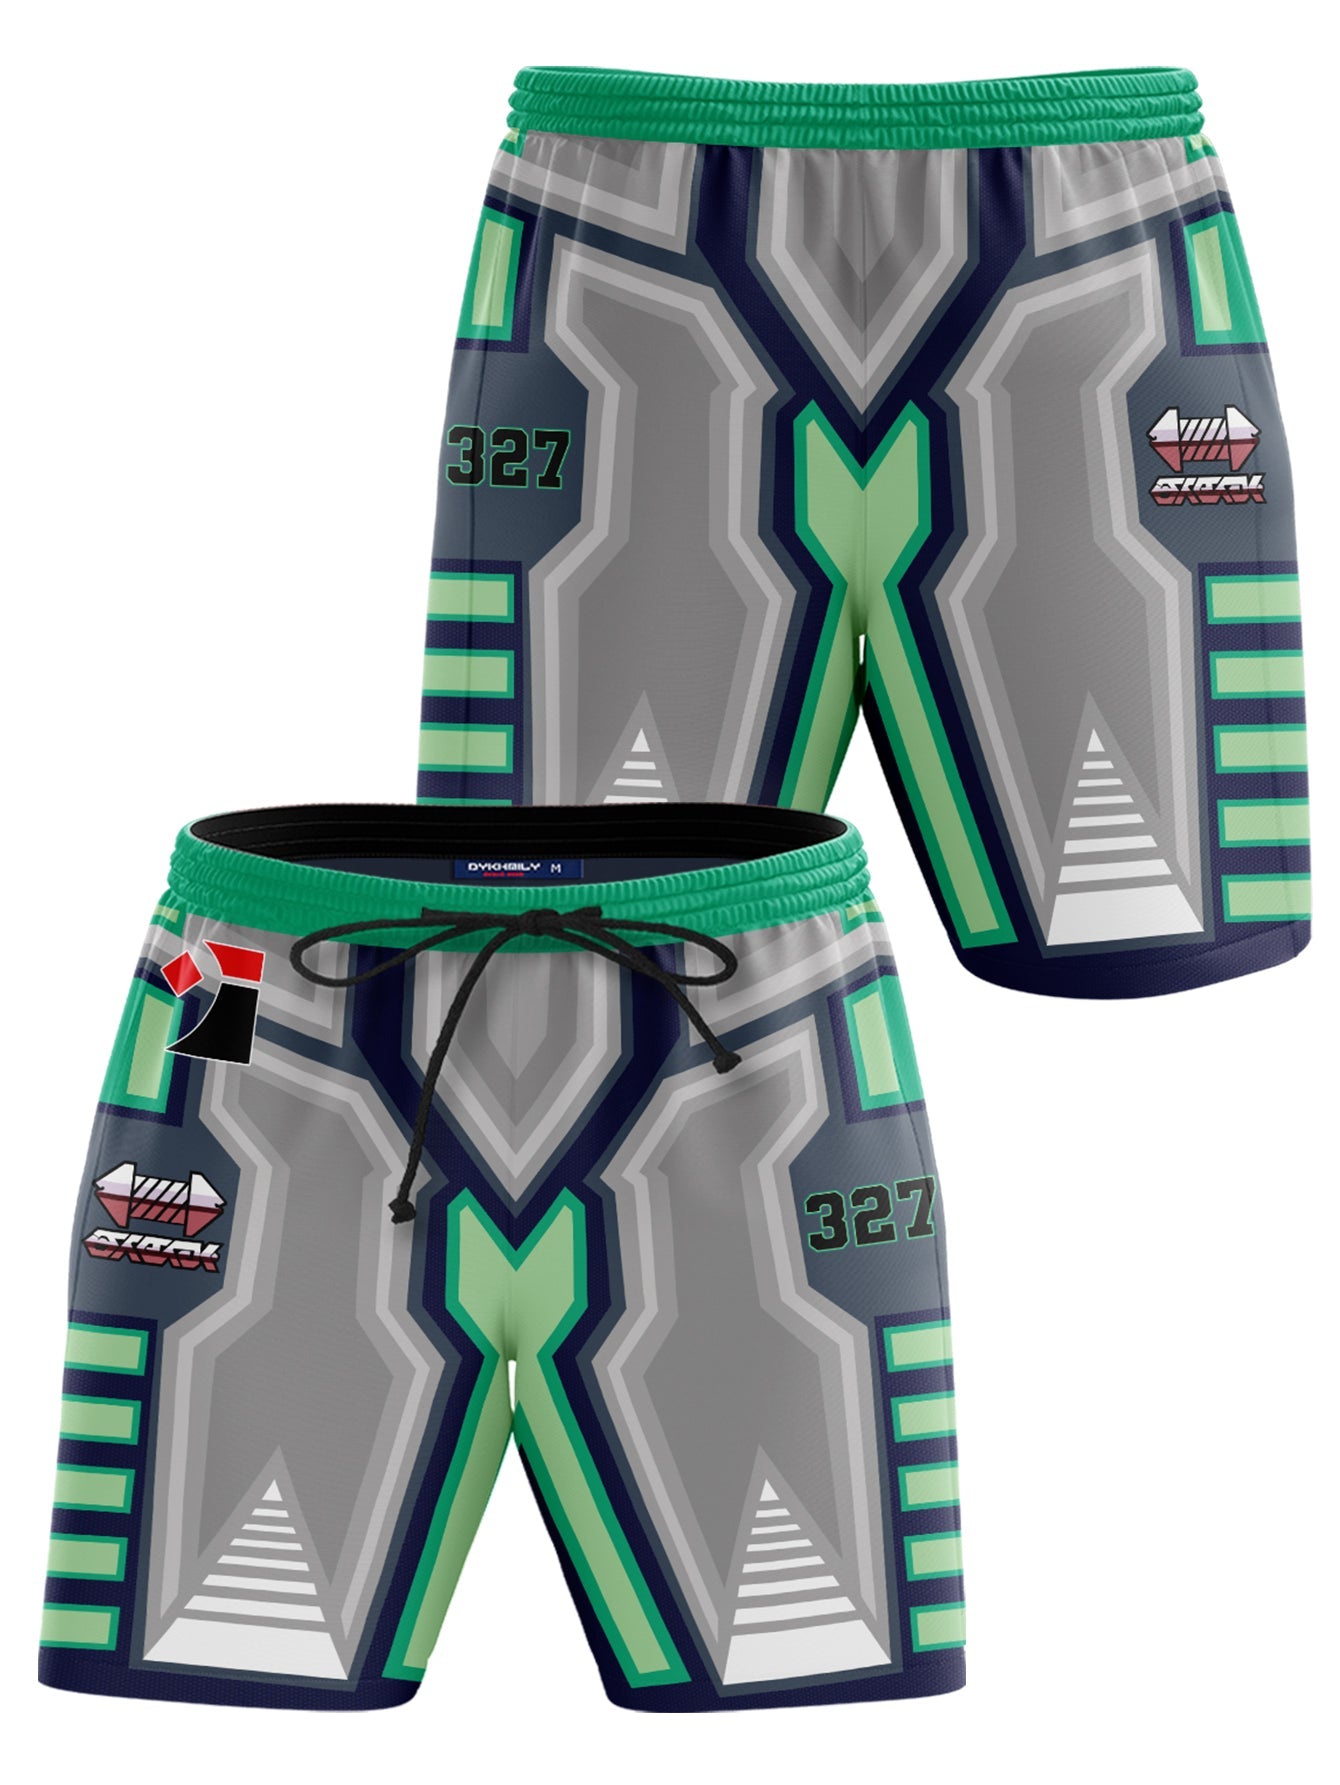 Fandomaniax - [Buy 1 Get 1 SALE] Poke Steel Uniform Beach Shorts